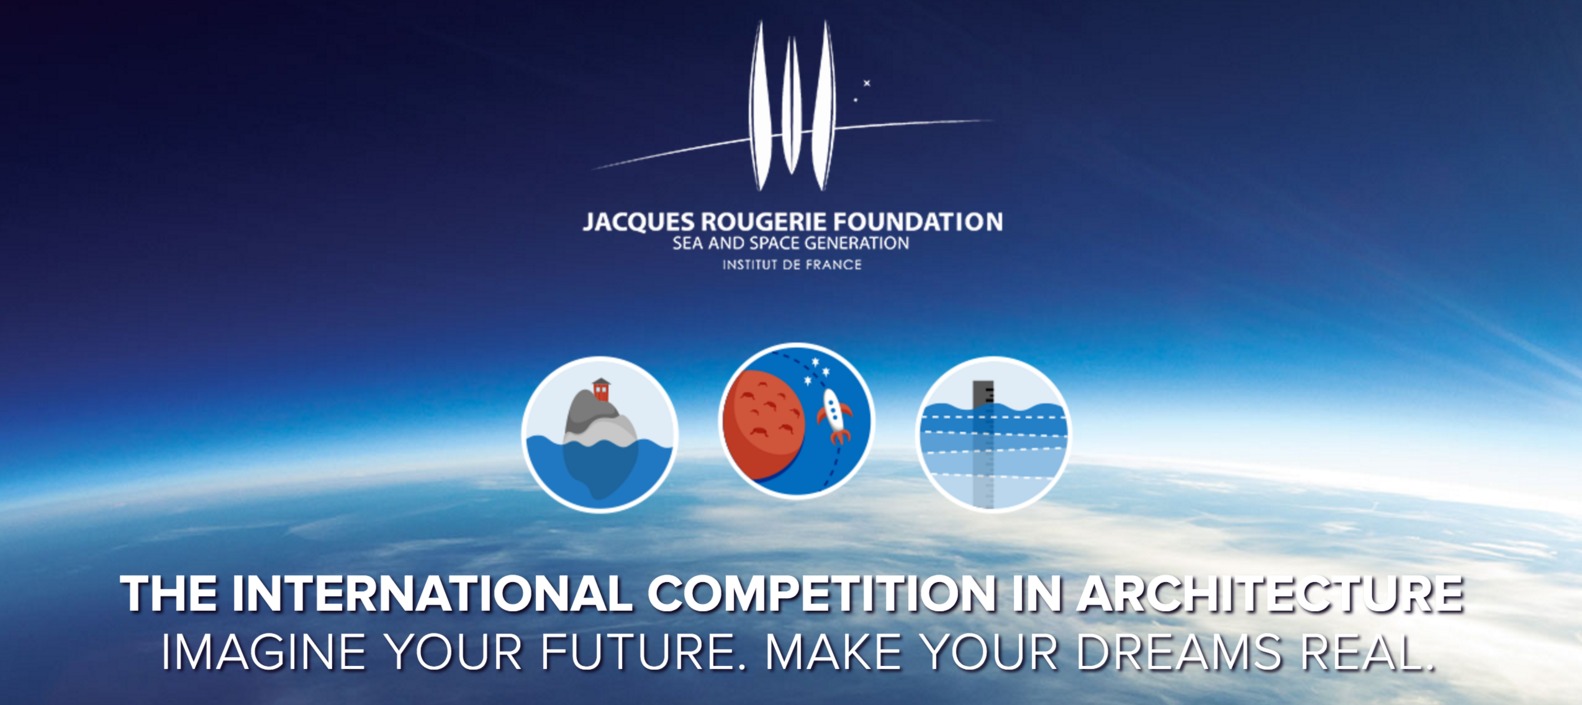 مسابقه معماری Jacques Rougerie Foundation 